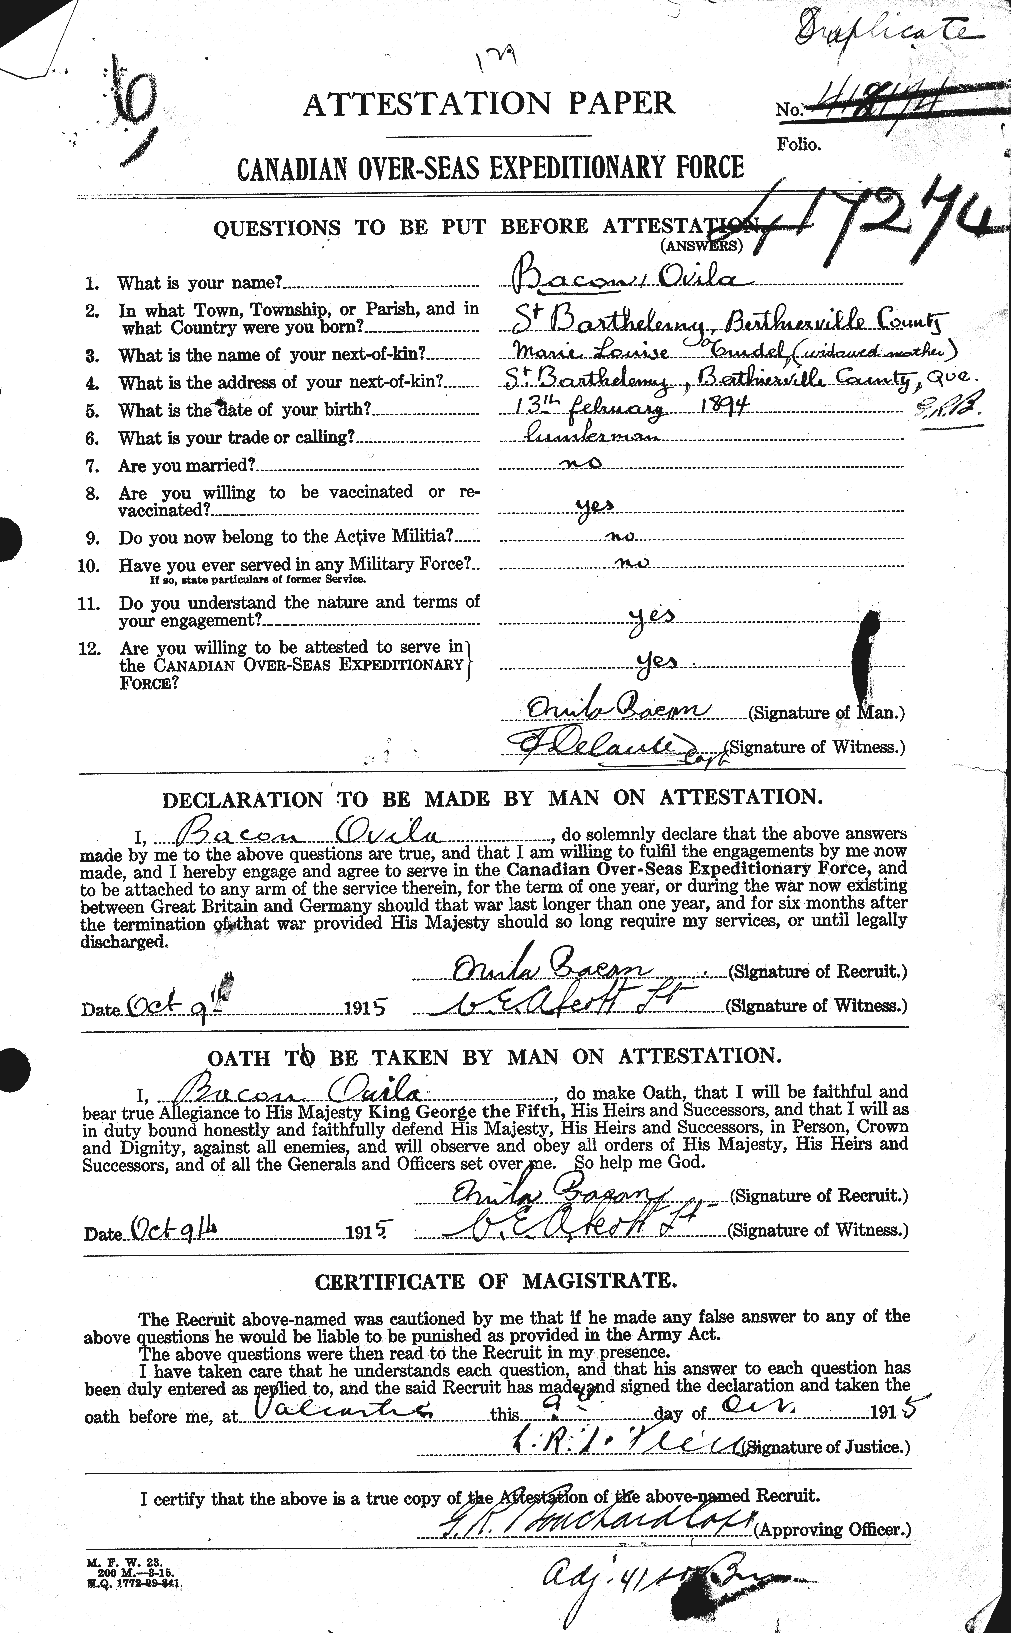 Dossiers du Personnel de la Première Guerre mondiale - CEC 217860a